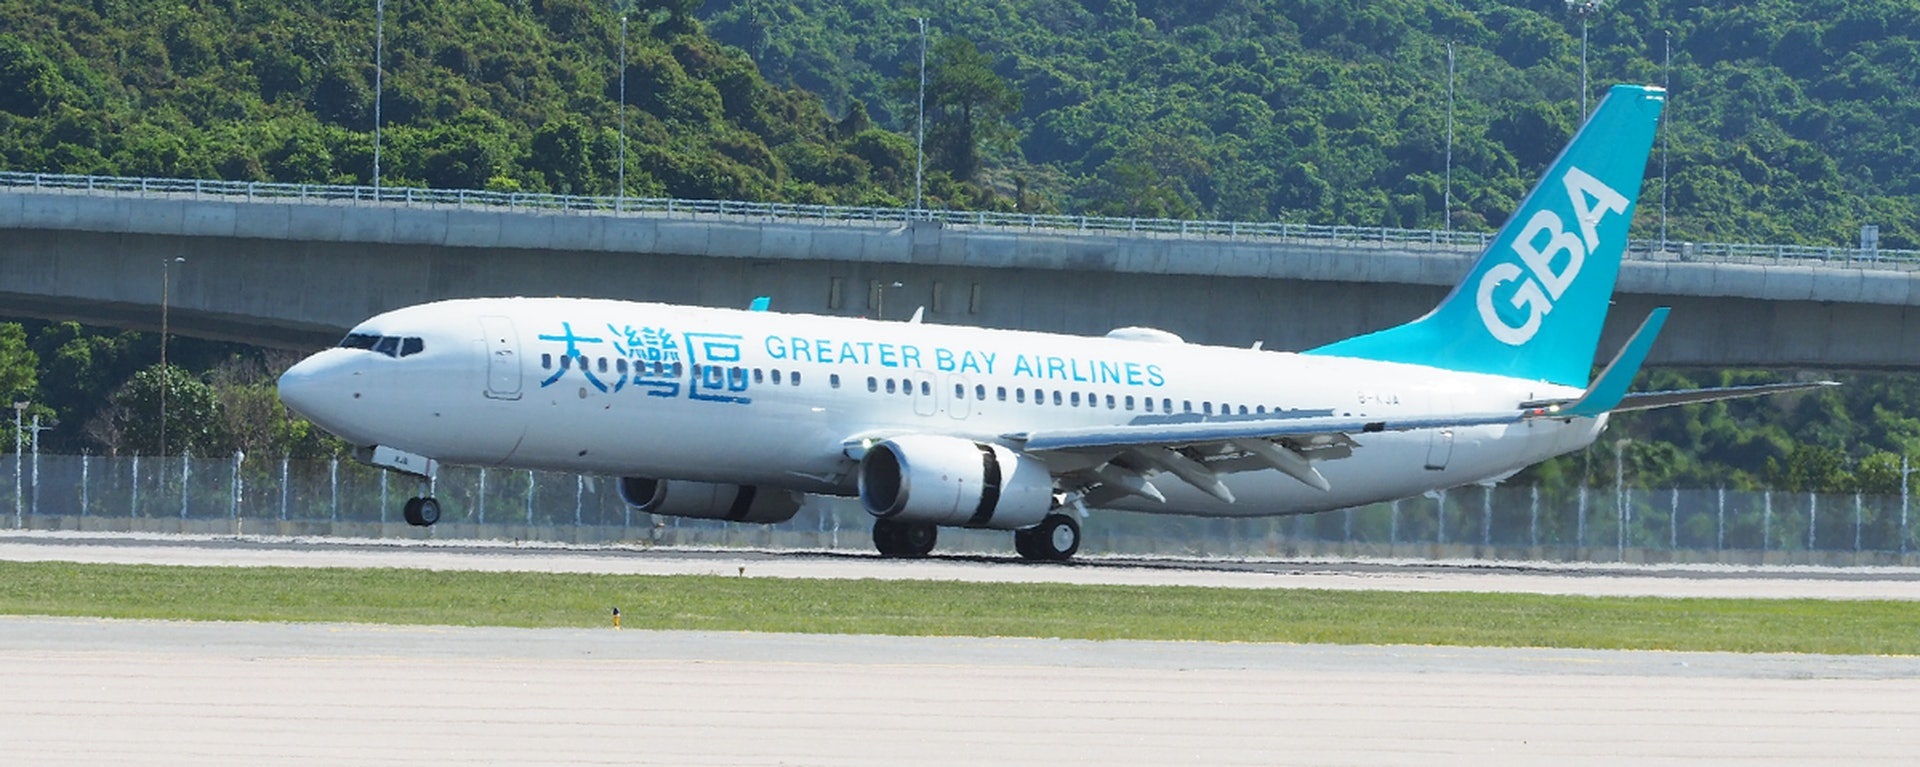 大湾区航空HB660航班客机准备起飞，前往曼谷。